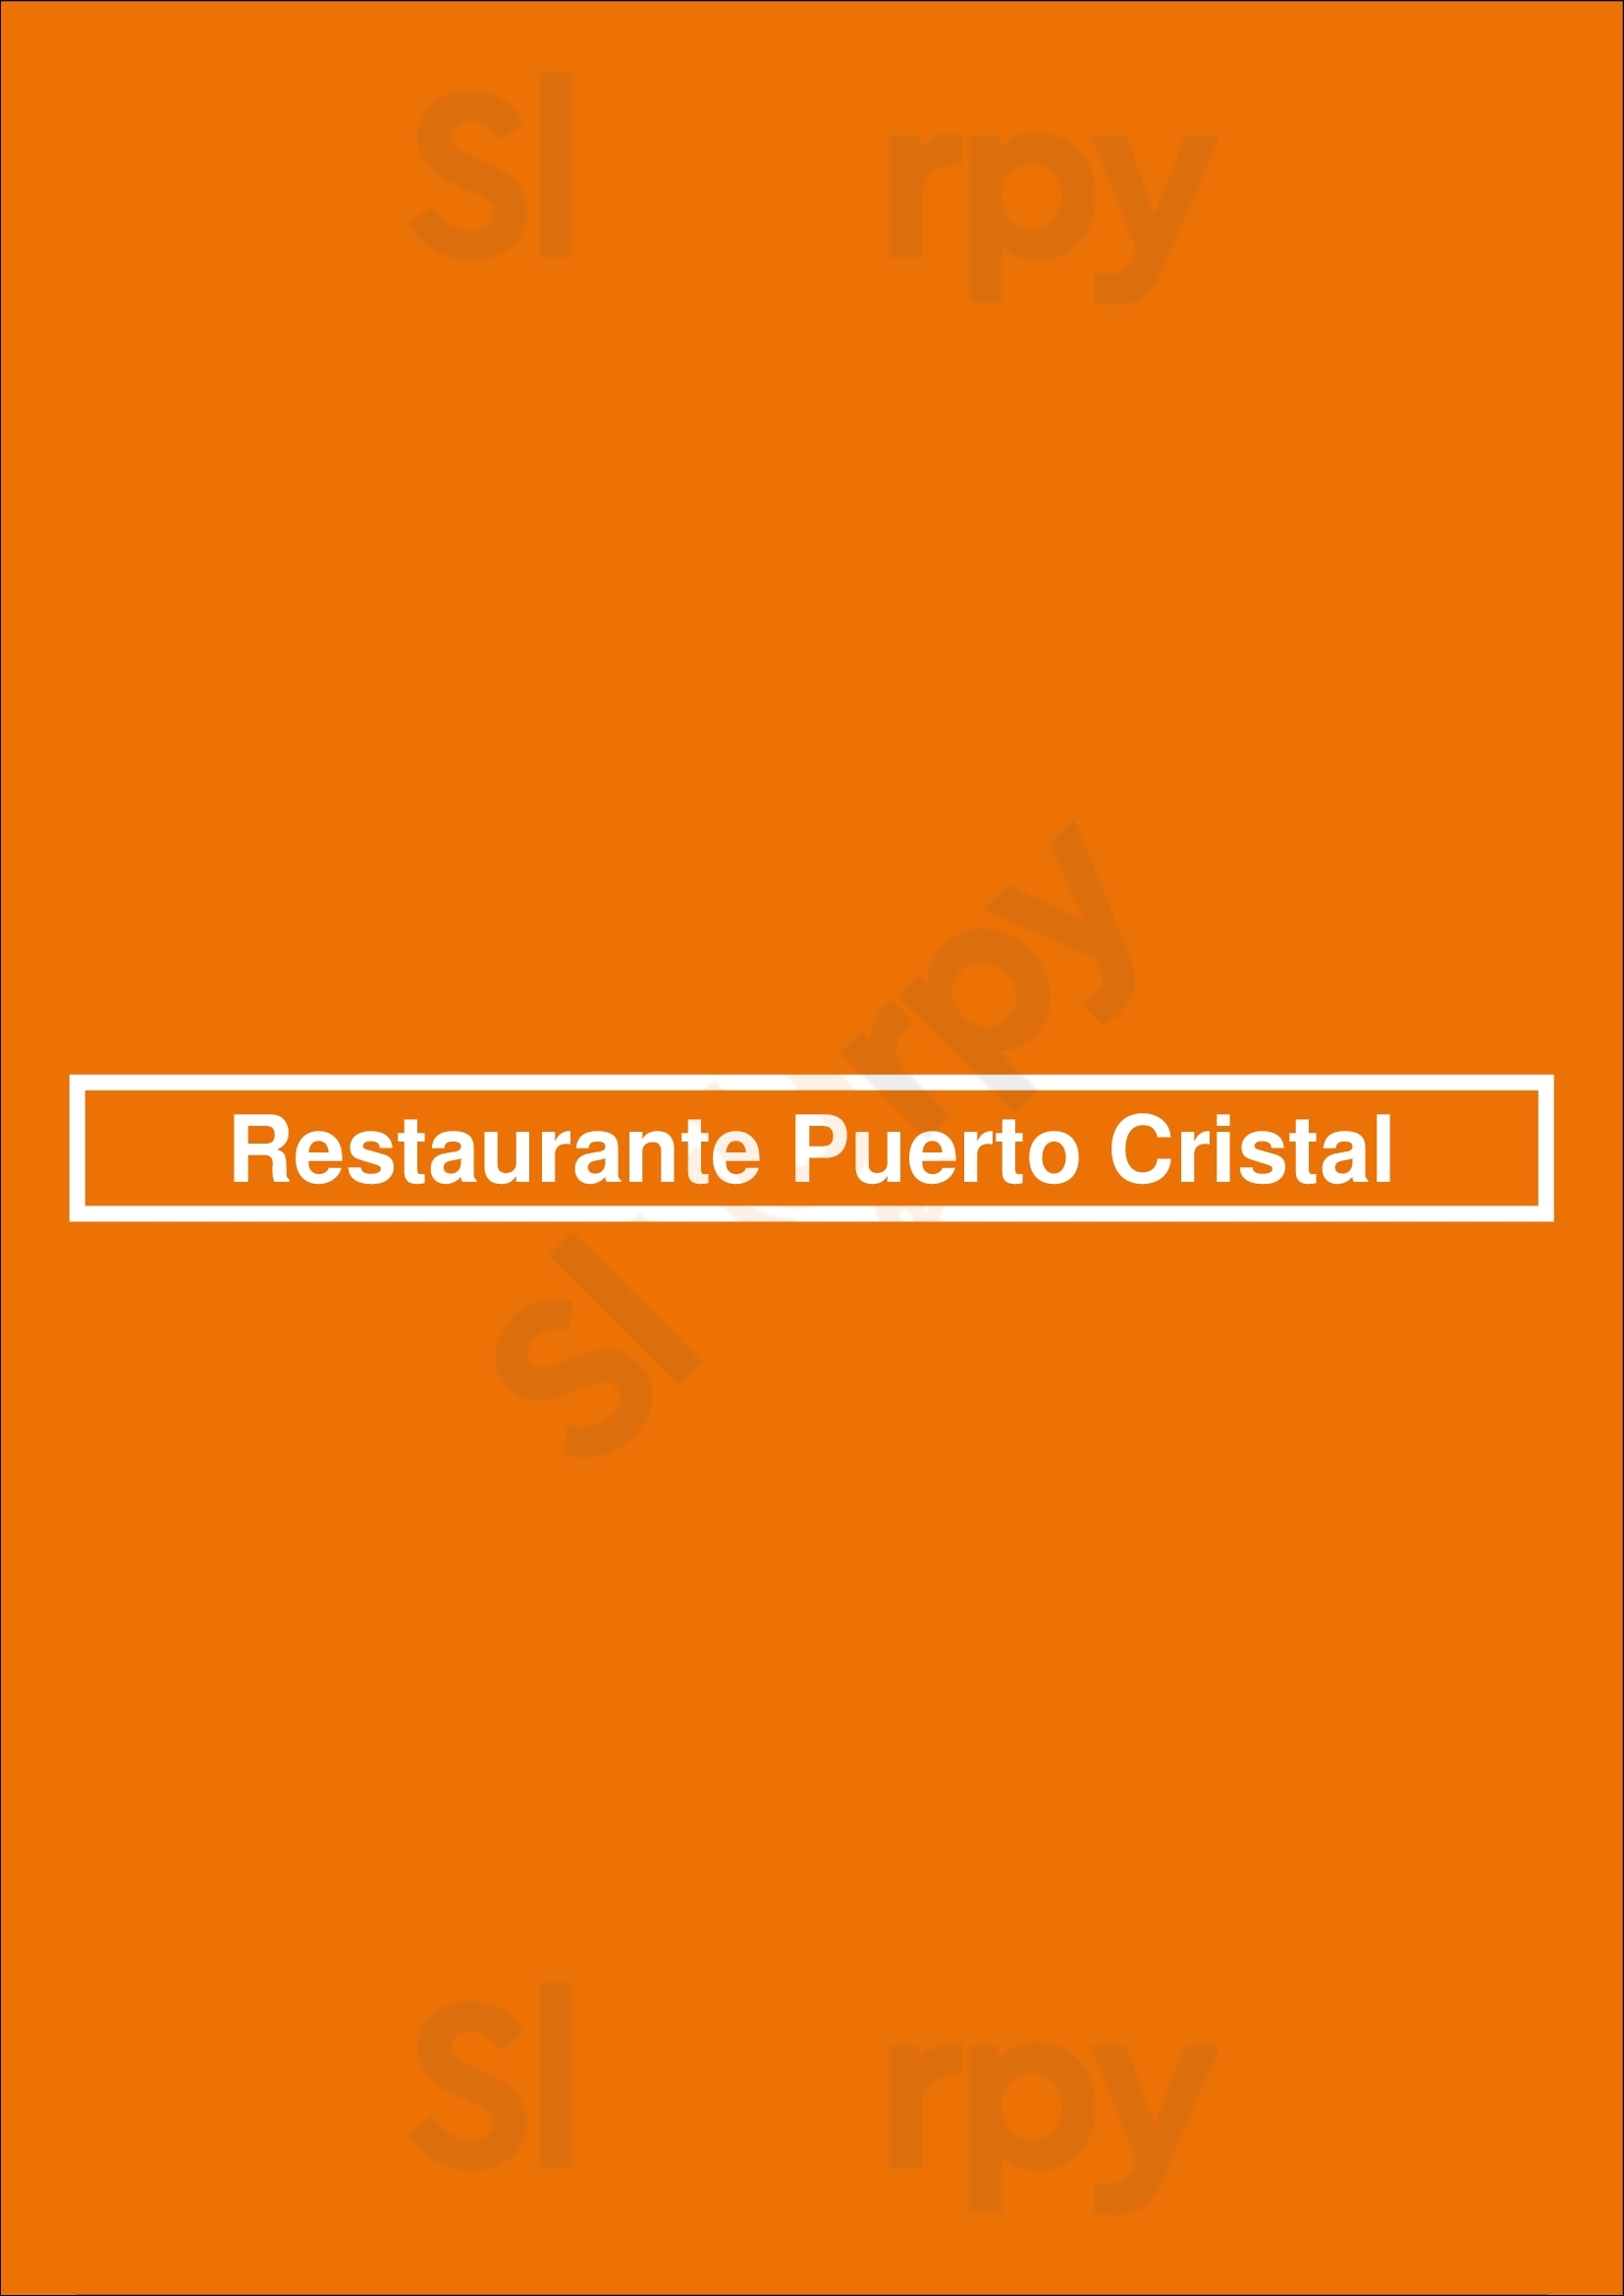 Restaurante Puerto Cristal Buenos Aires Menu - 1